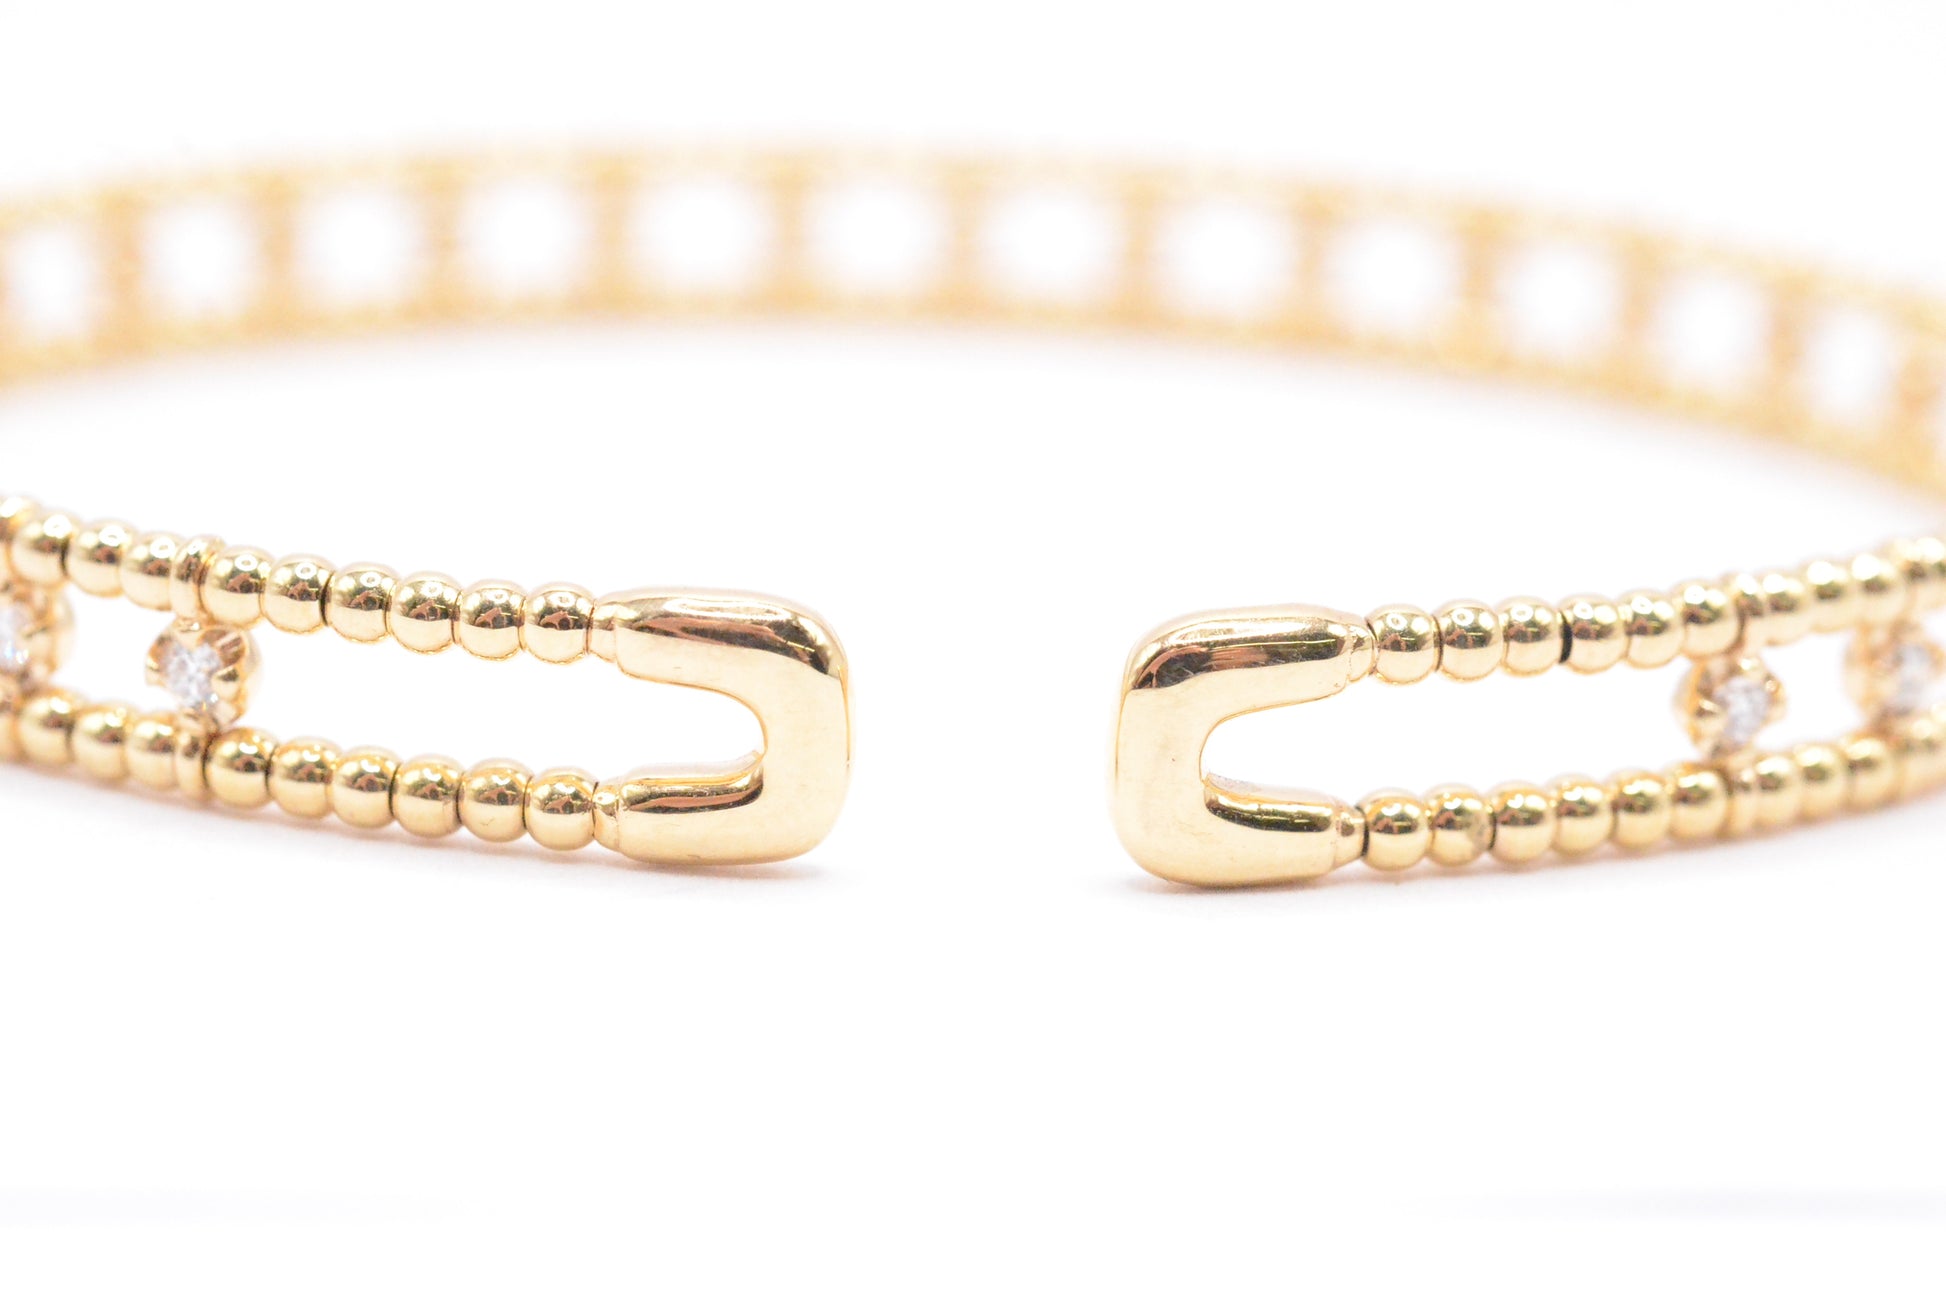 Double Row Diamond Bracelet [SB879] | USA Jewels